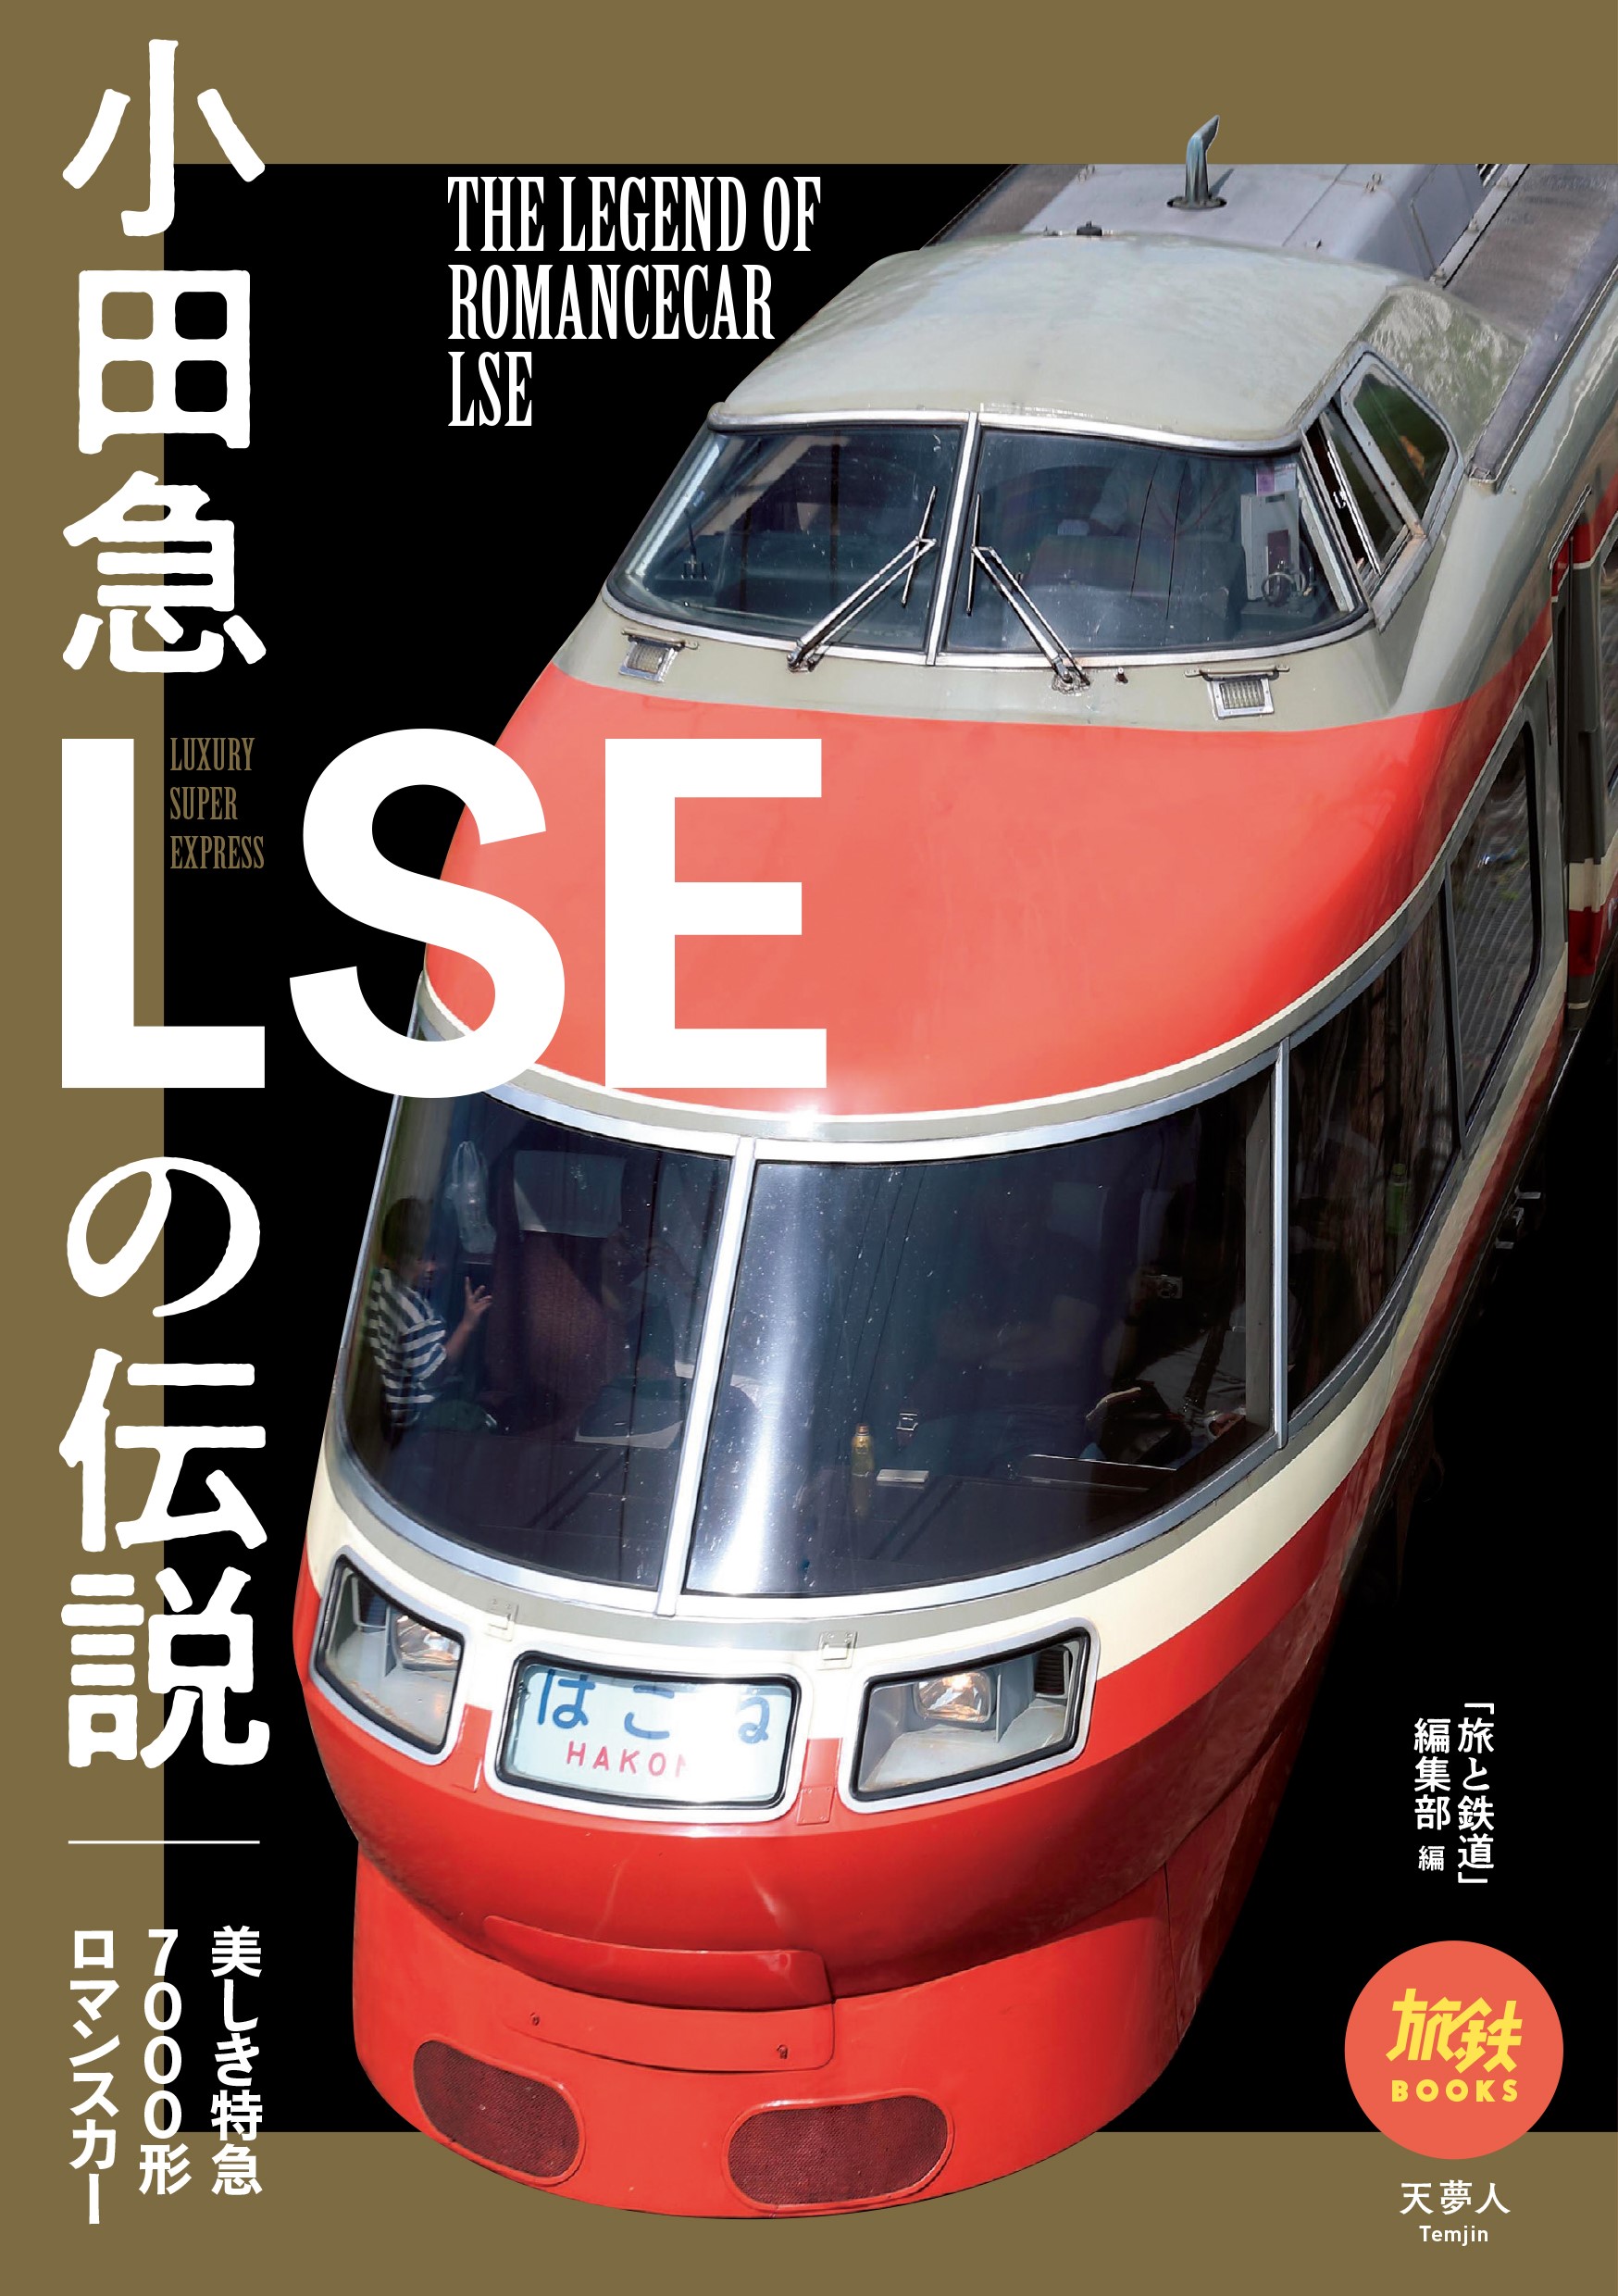 小田急ロマンスカーLSEを振り返る1冊 『小田急LSEの伝説』 | BOOKウォッチ